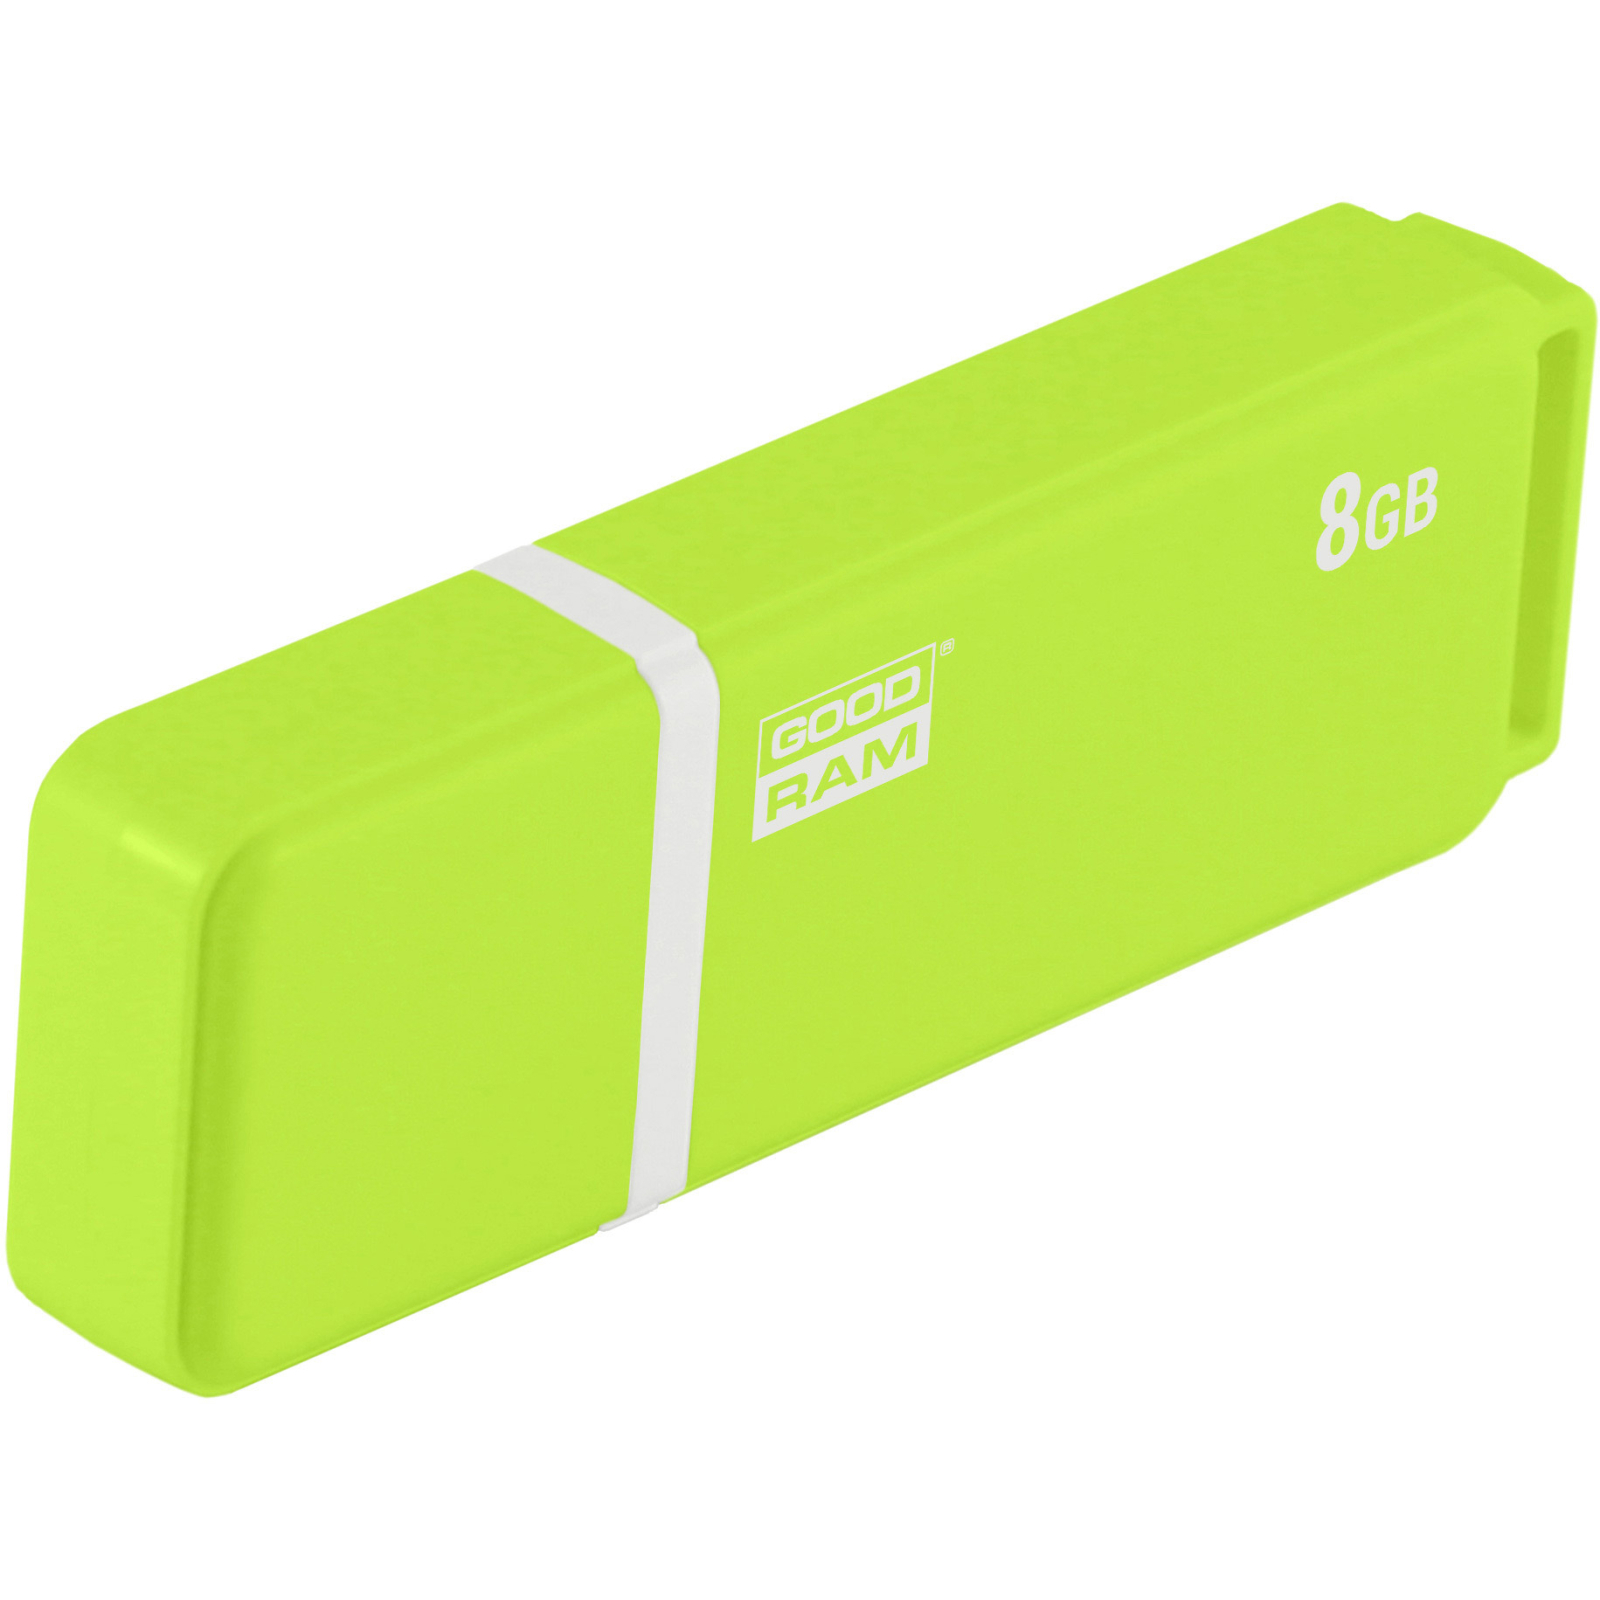 USB флеш накопитель Goodram 8GB UMO2 Orange Green USB 2.0 (UMO2-0080OGR11) изображение 2